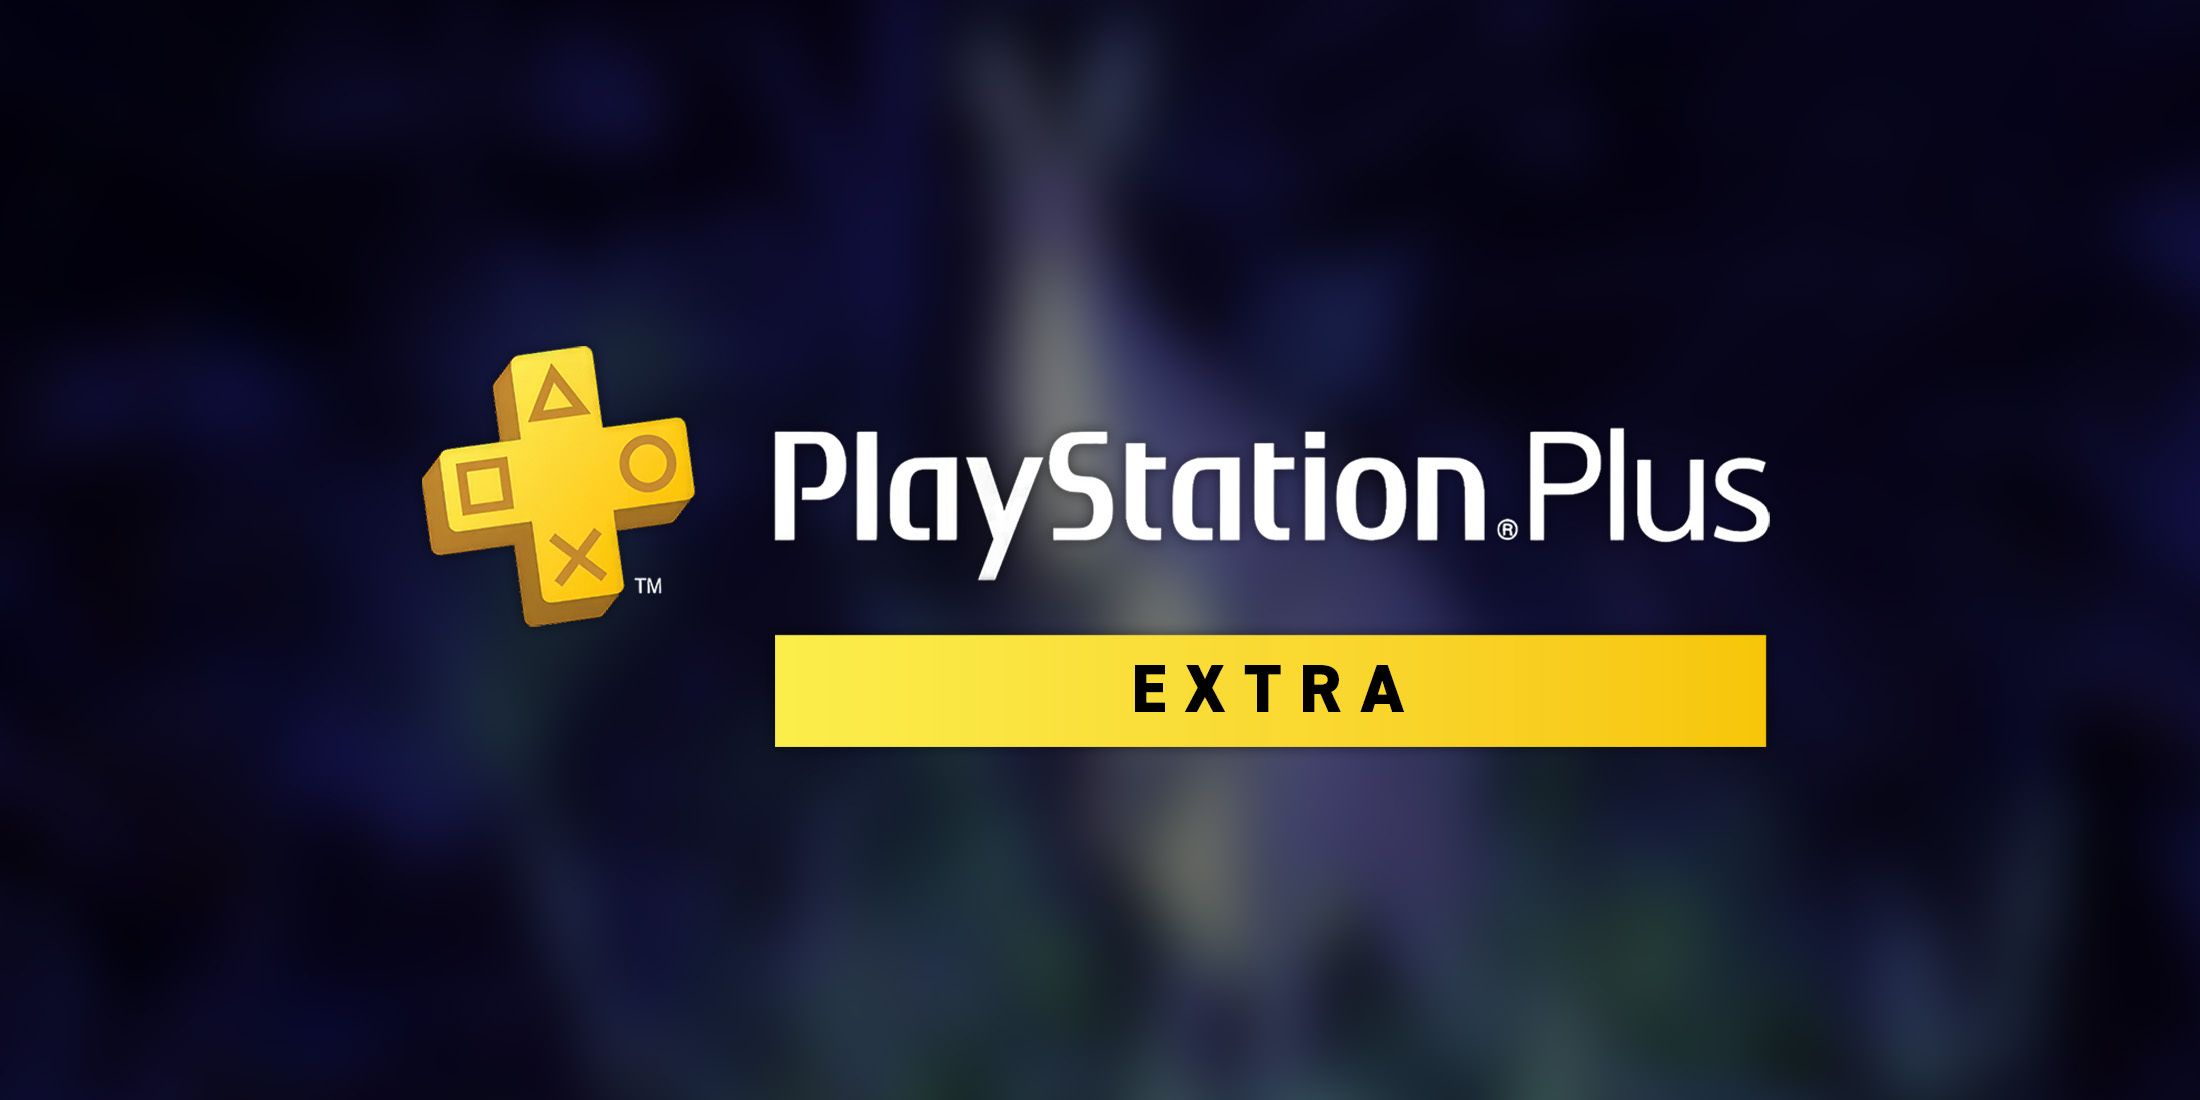 PS Plus Extra добавляет игру первого дня с потрясающими отзывами